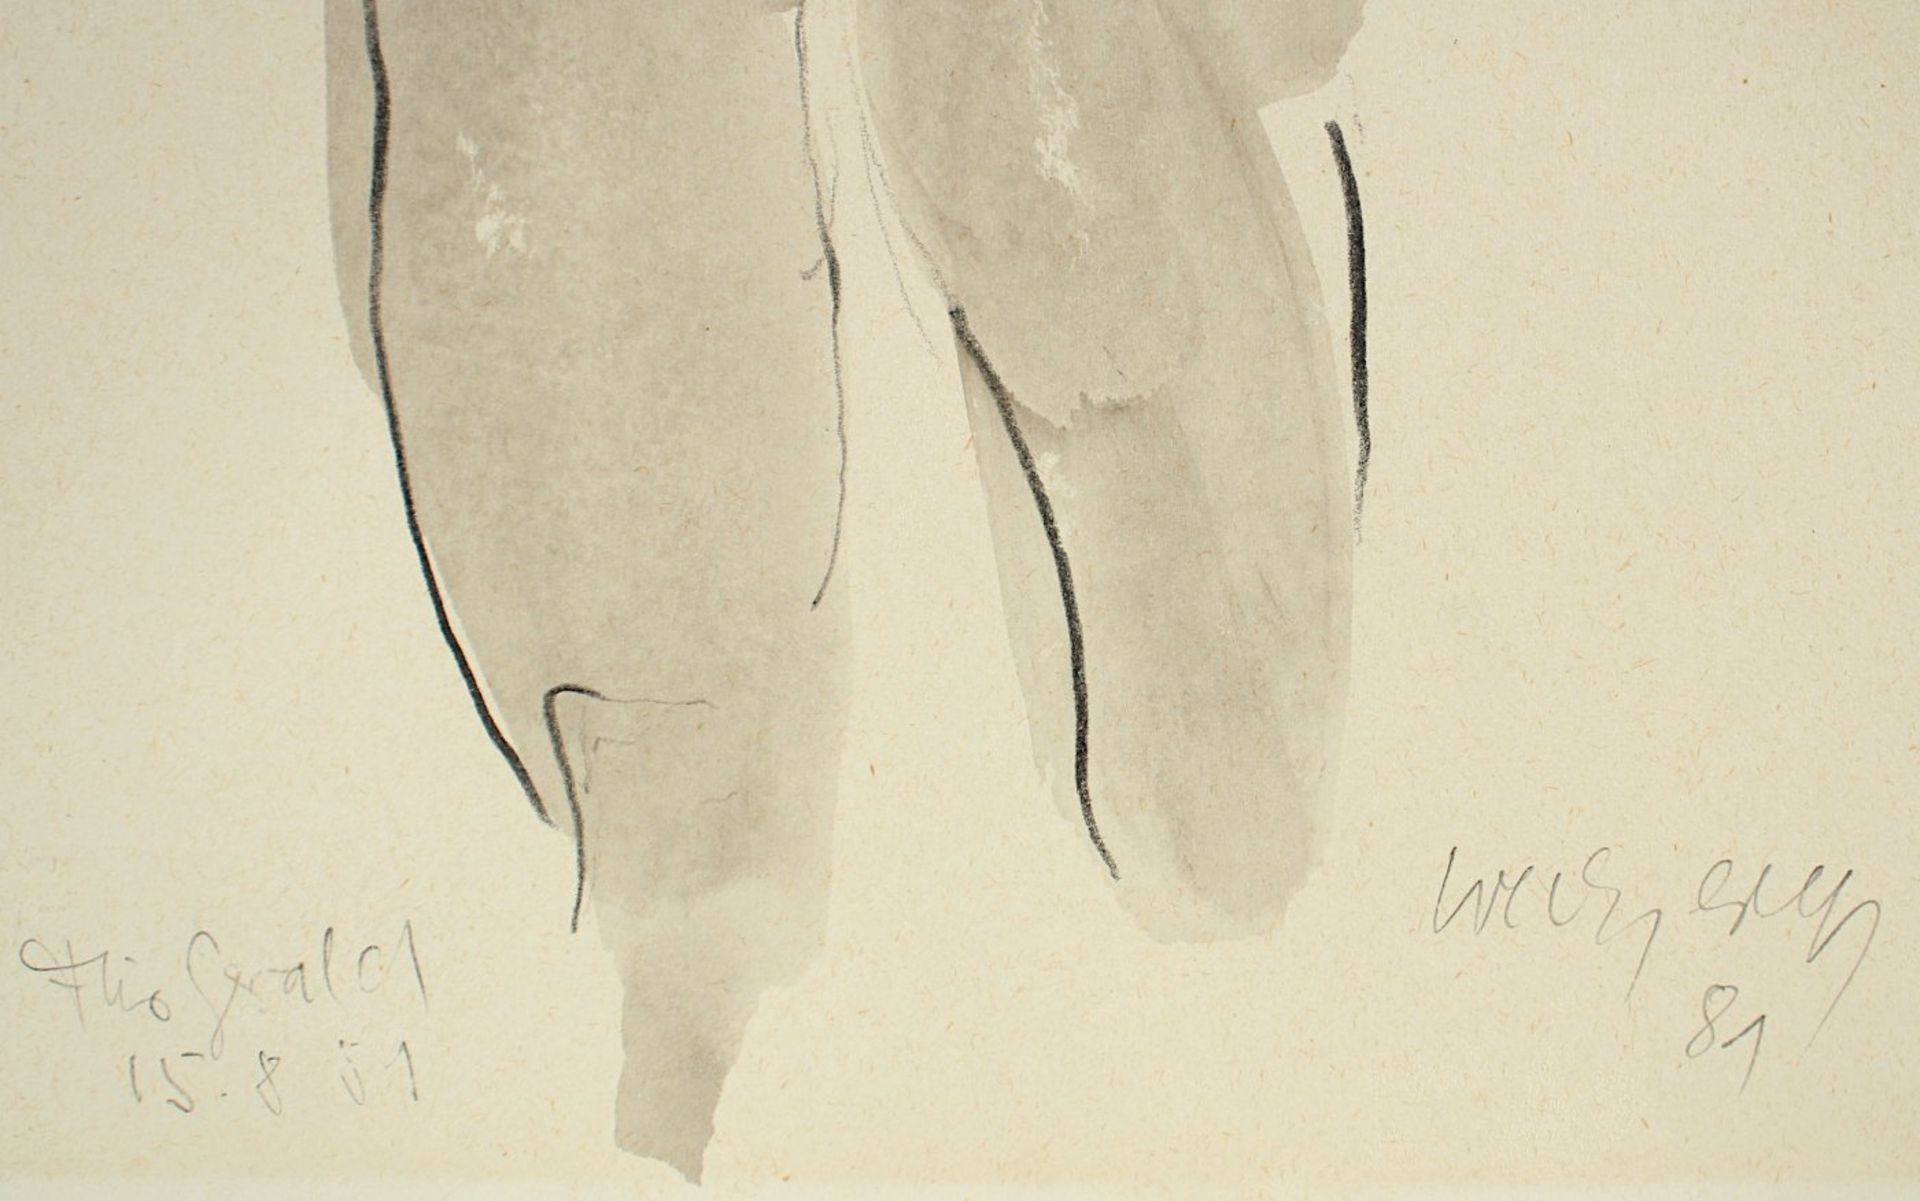 WECZEREK, Thomas, "Männerakt", Kohle, laviert, 32 x 23, handsigniert und datiert '81, Widmung, R. - Image 4 of 4